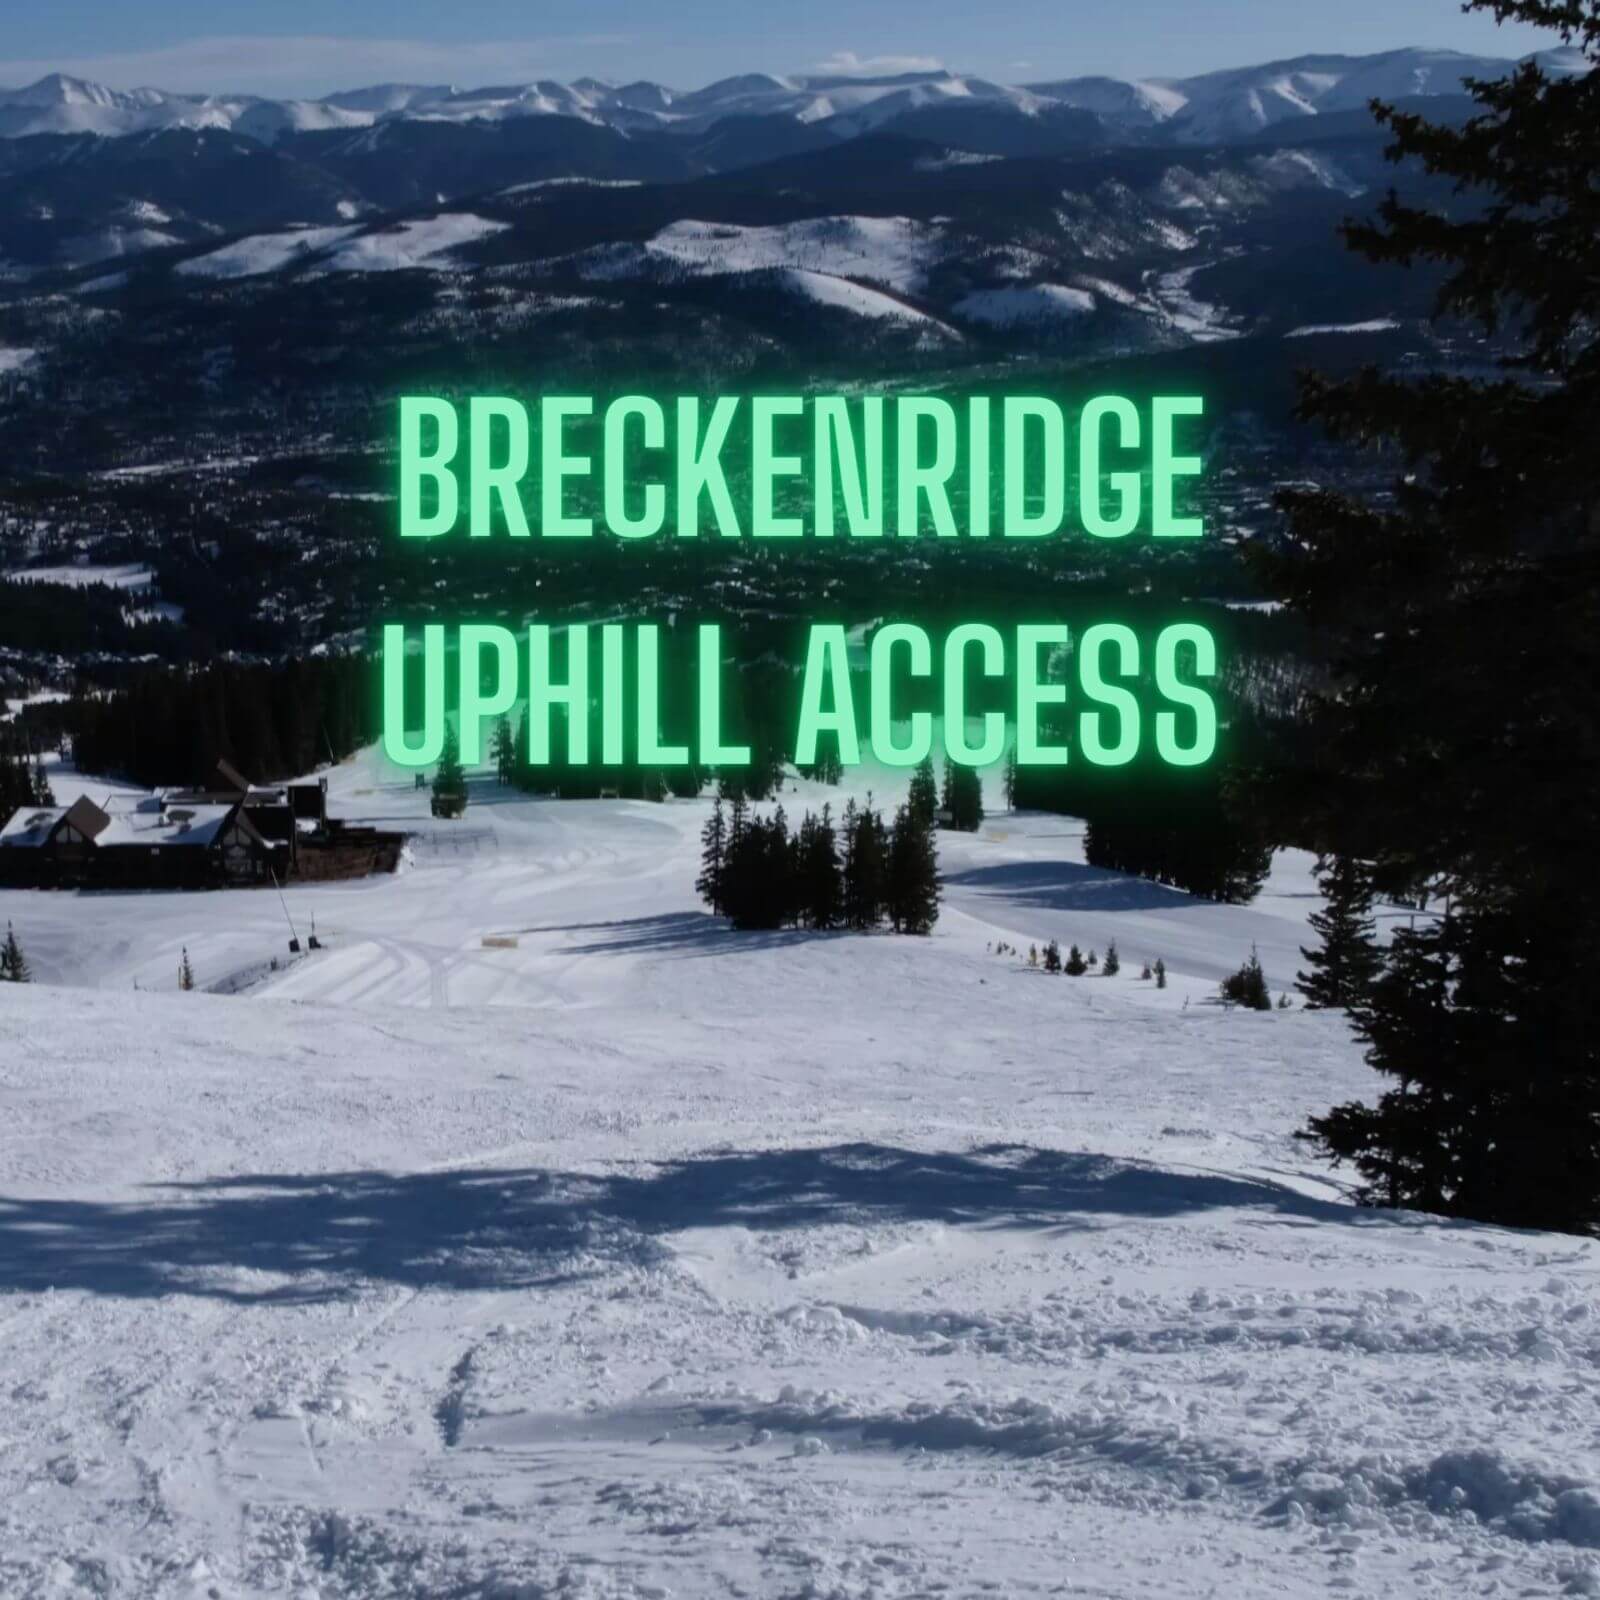 Breckenridge Uphill Access